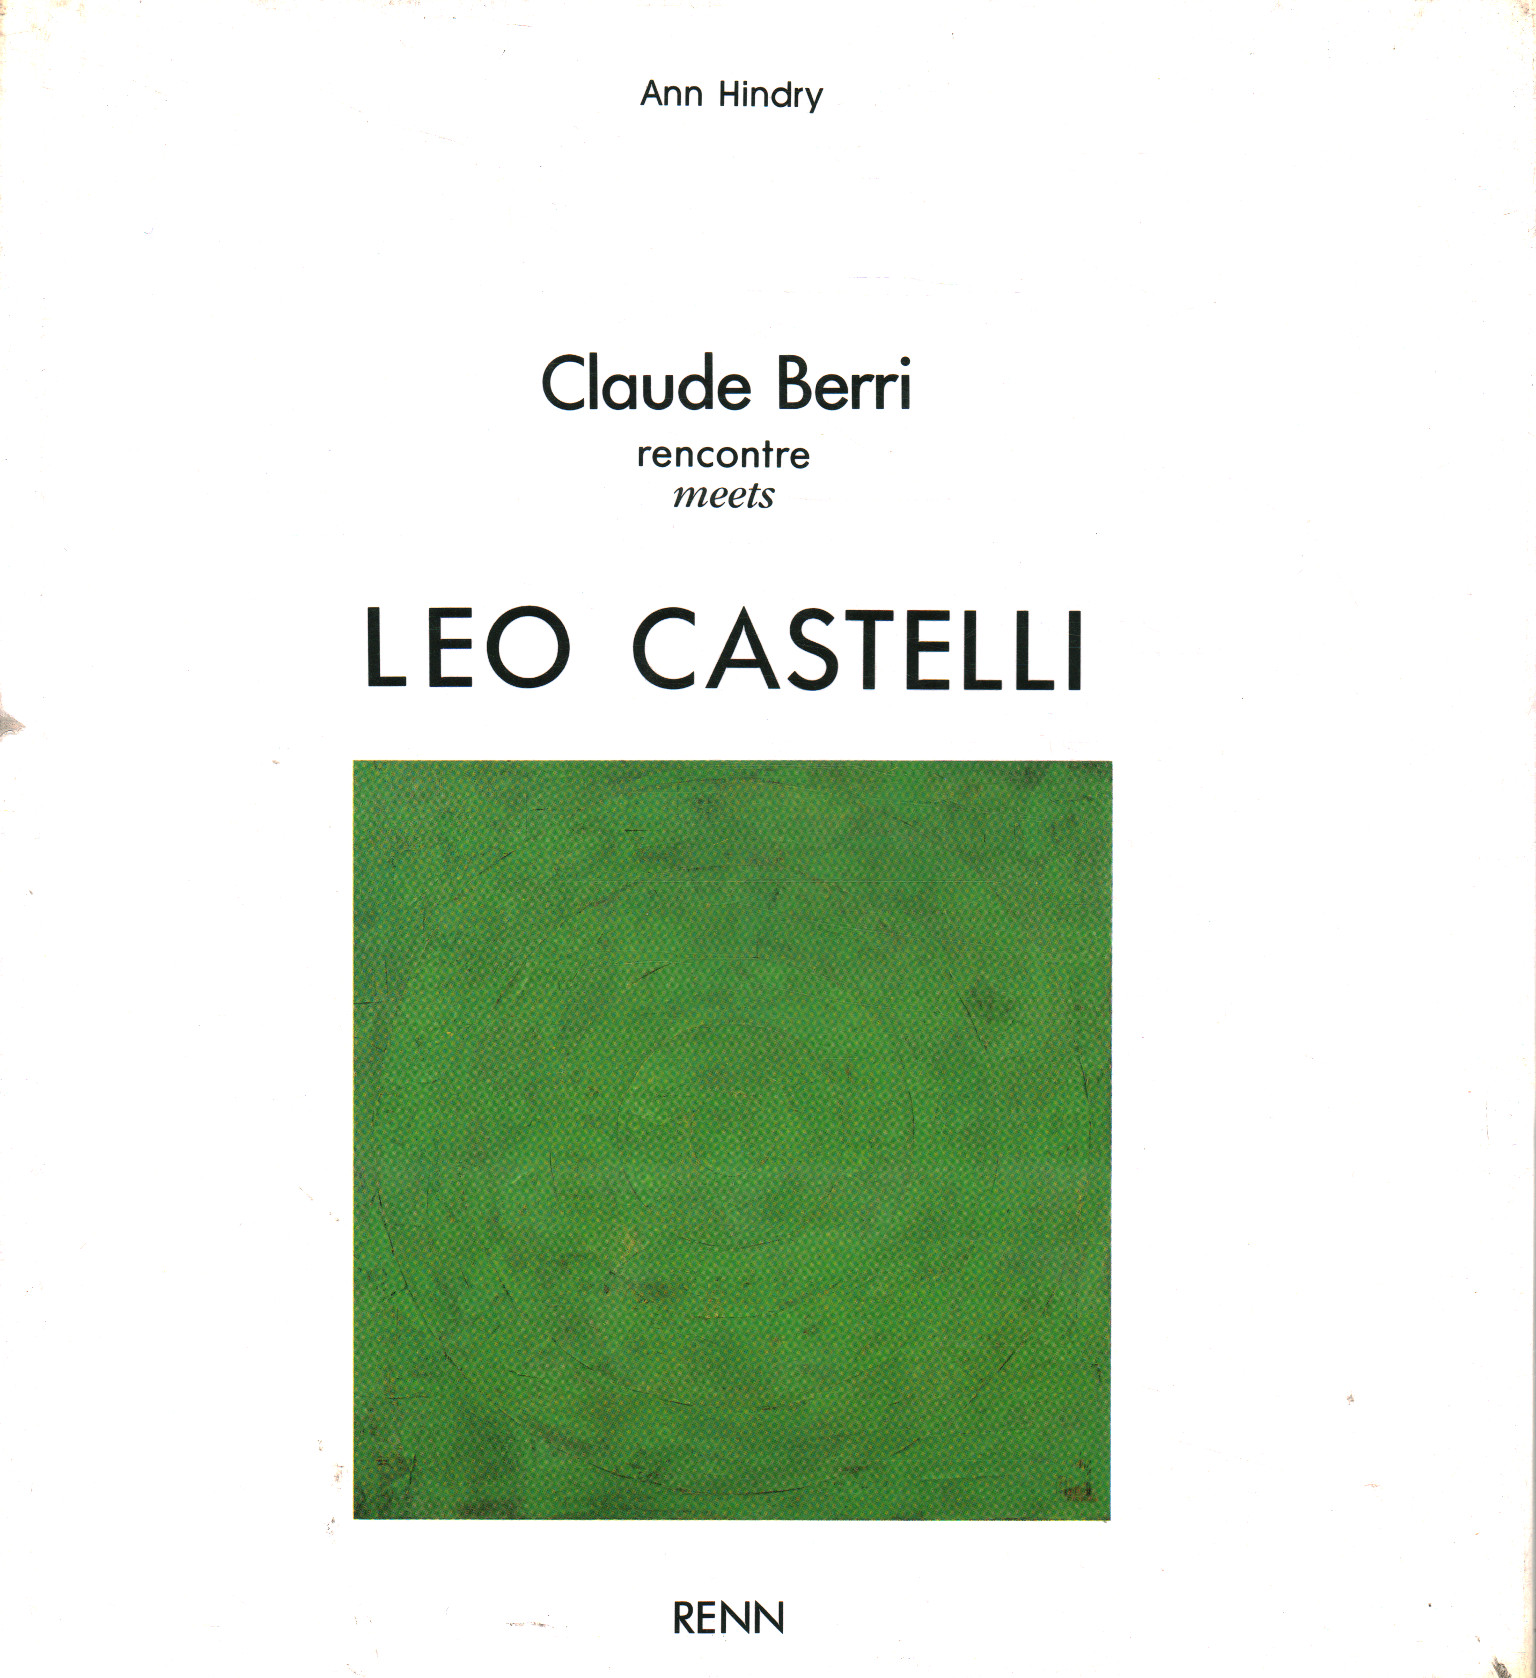 Claude Berri rencontre trifft Leo Castell